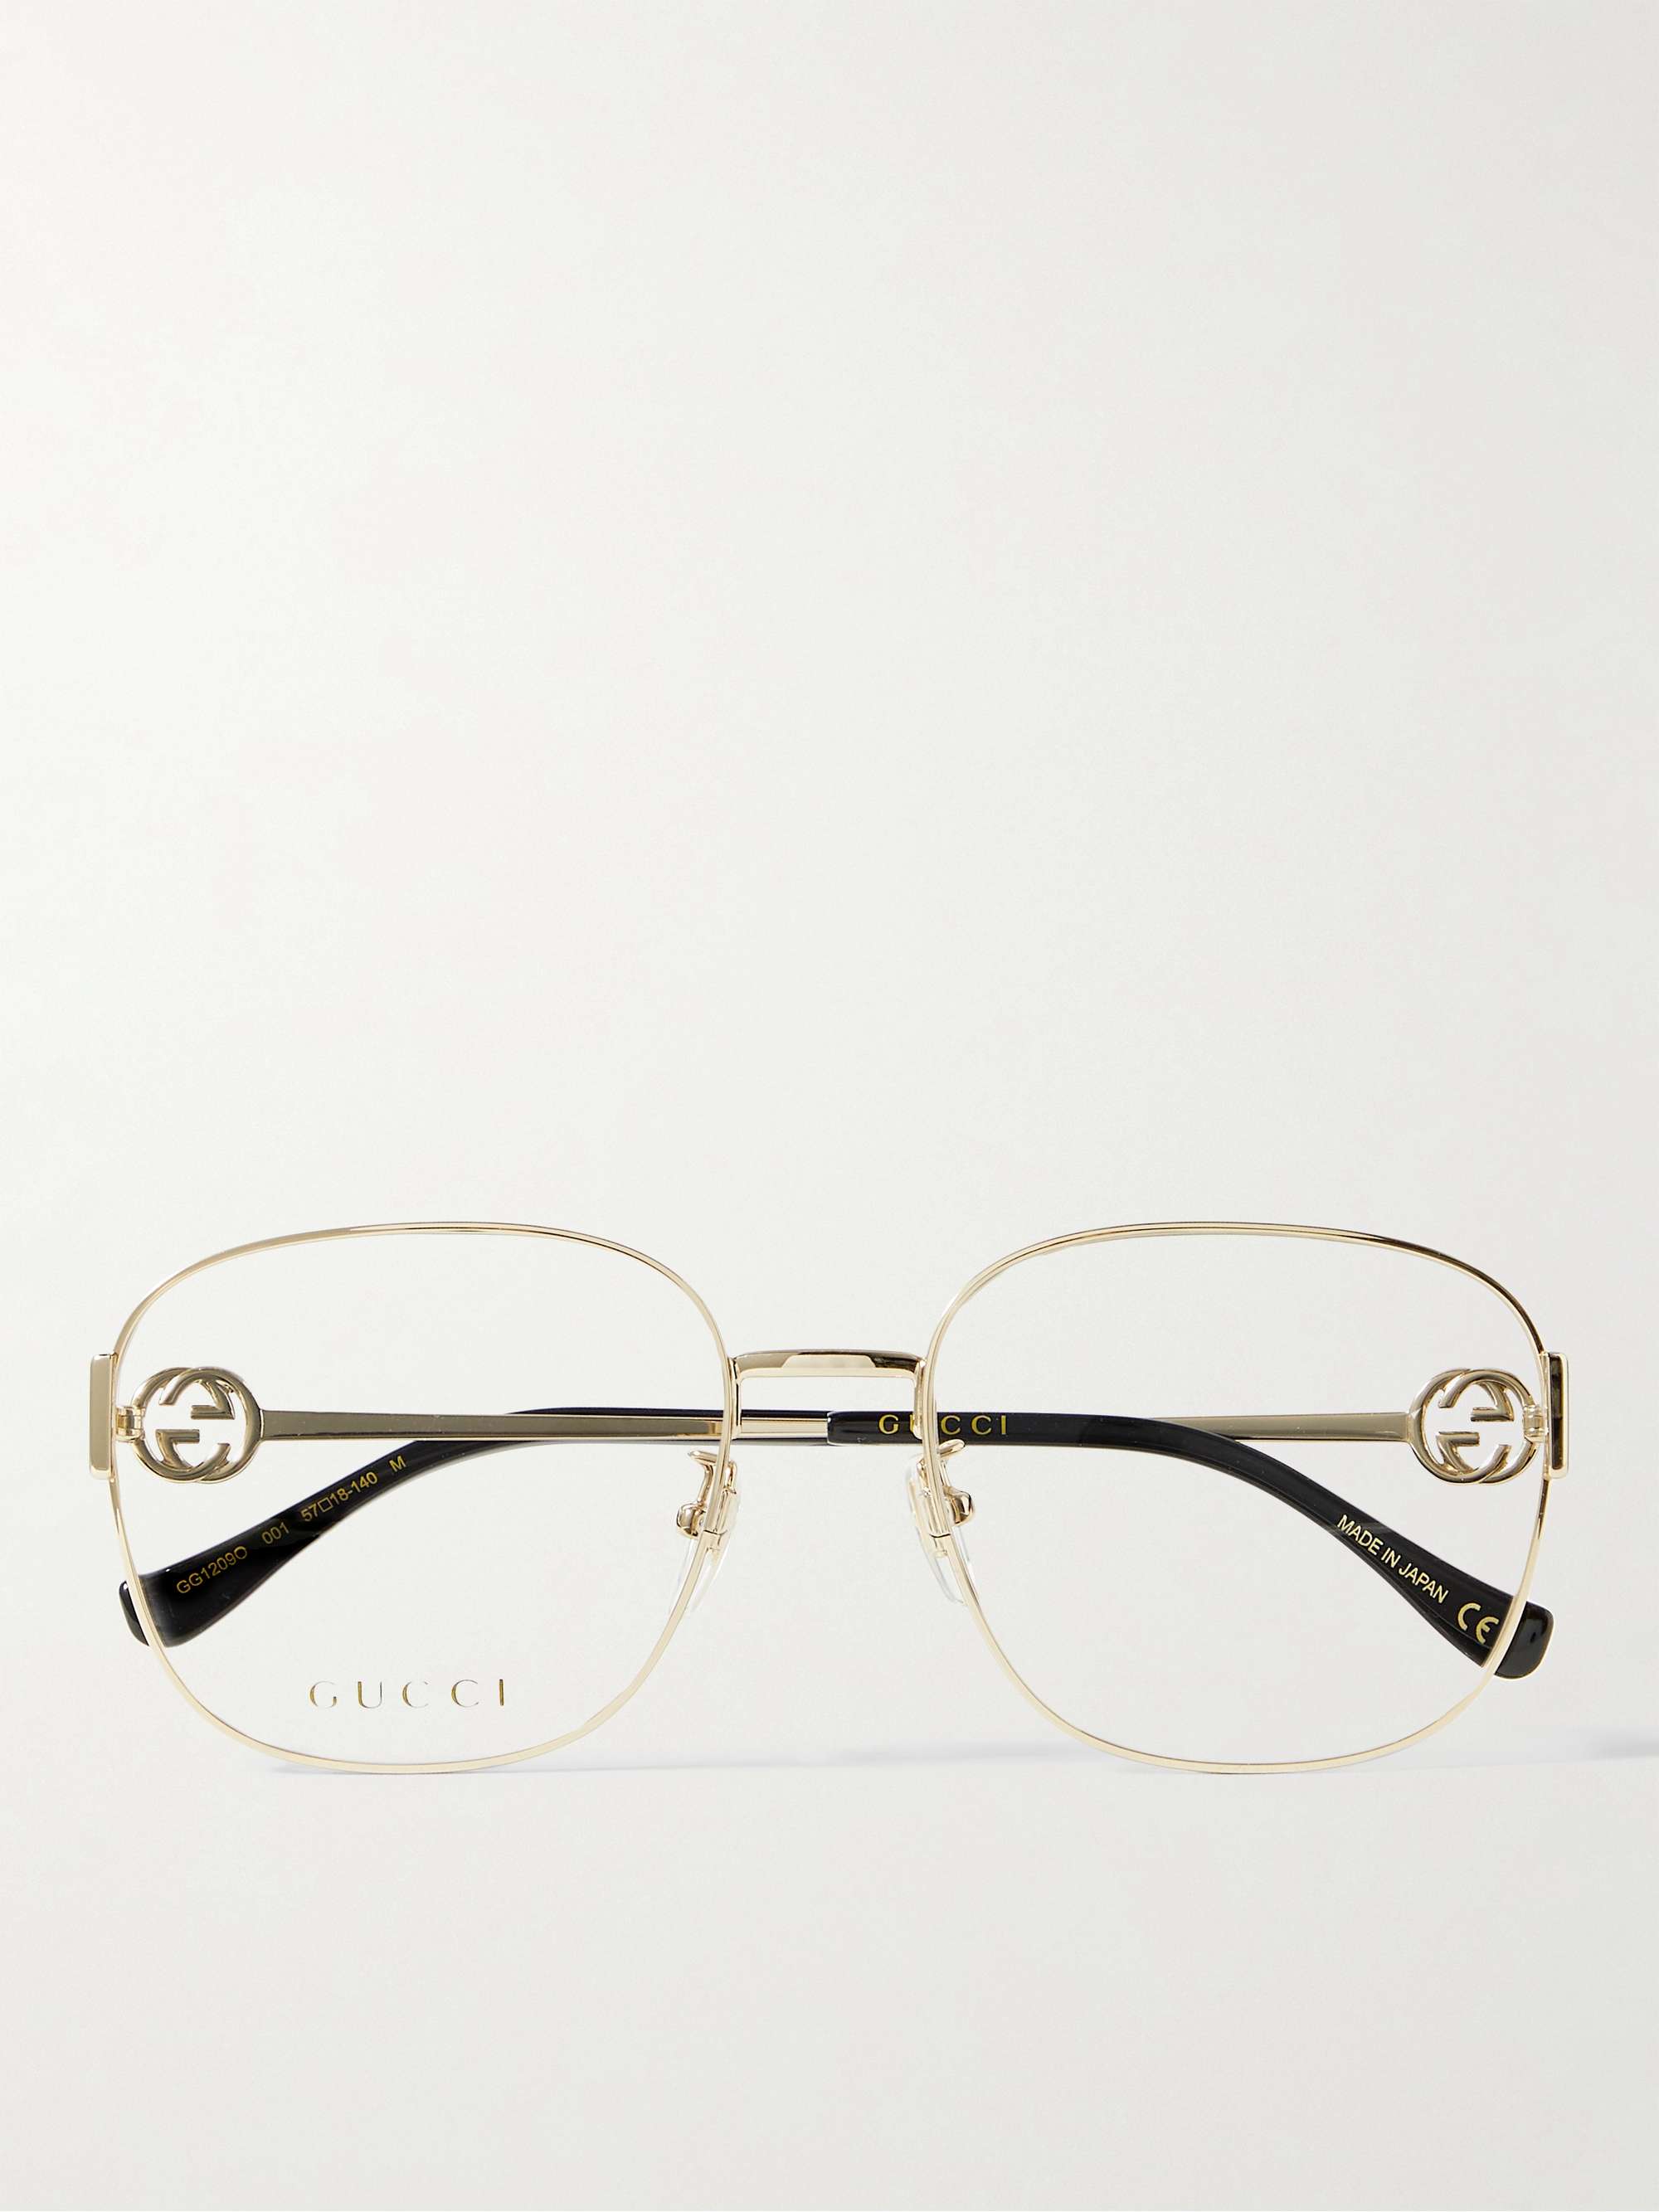 Goldfarbene Brille mit eckigem Rahmen und Kette | MR PORTER